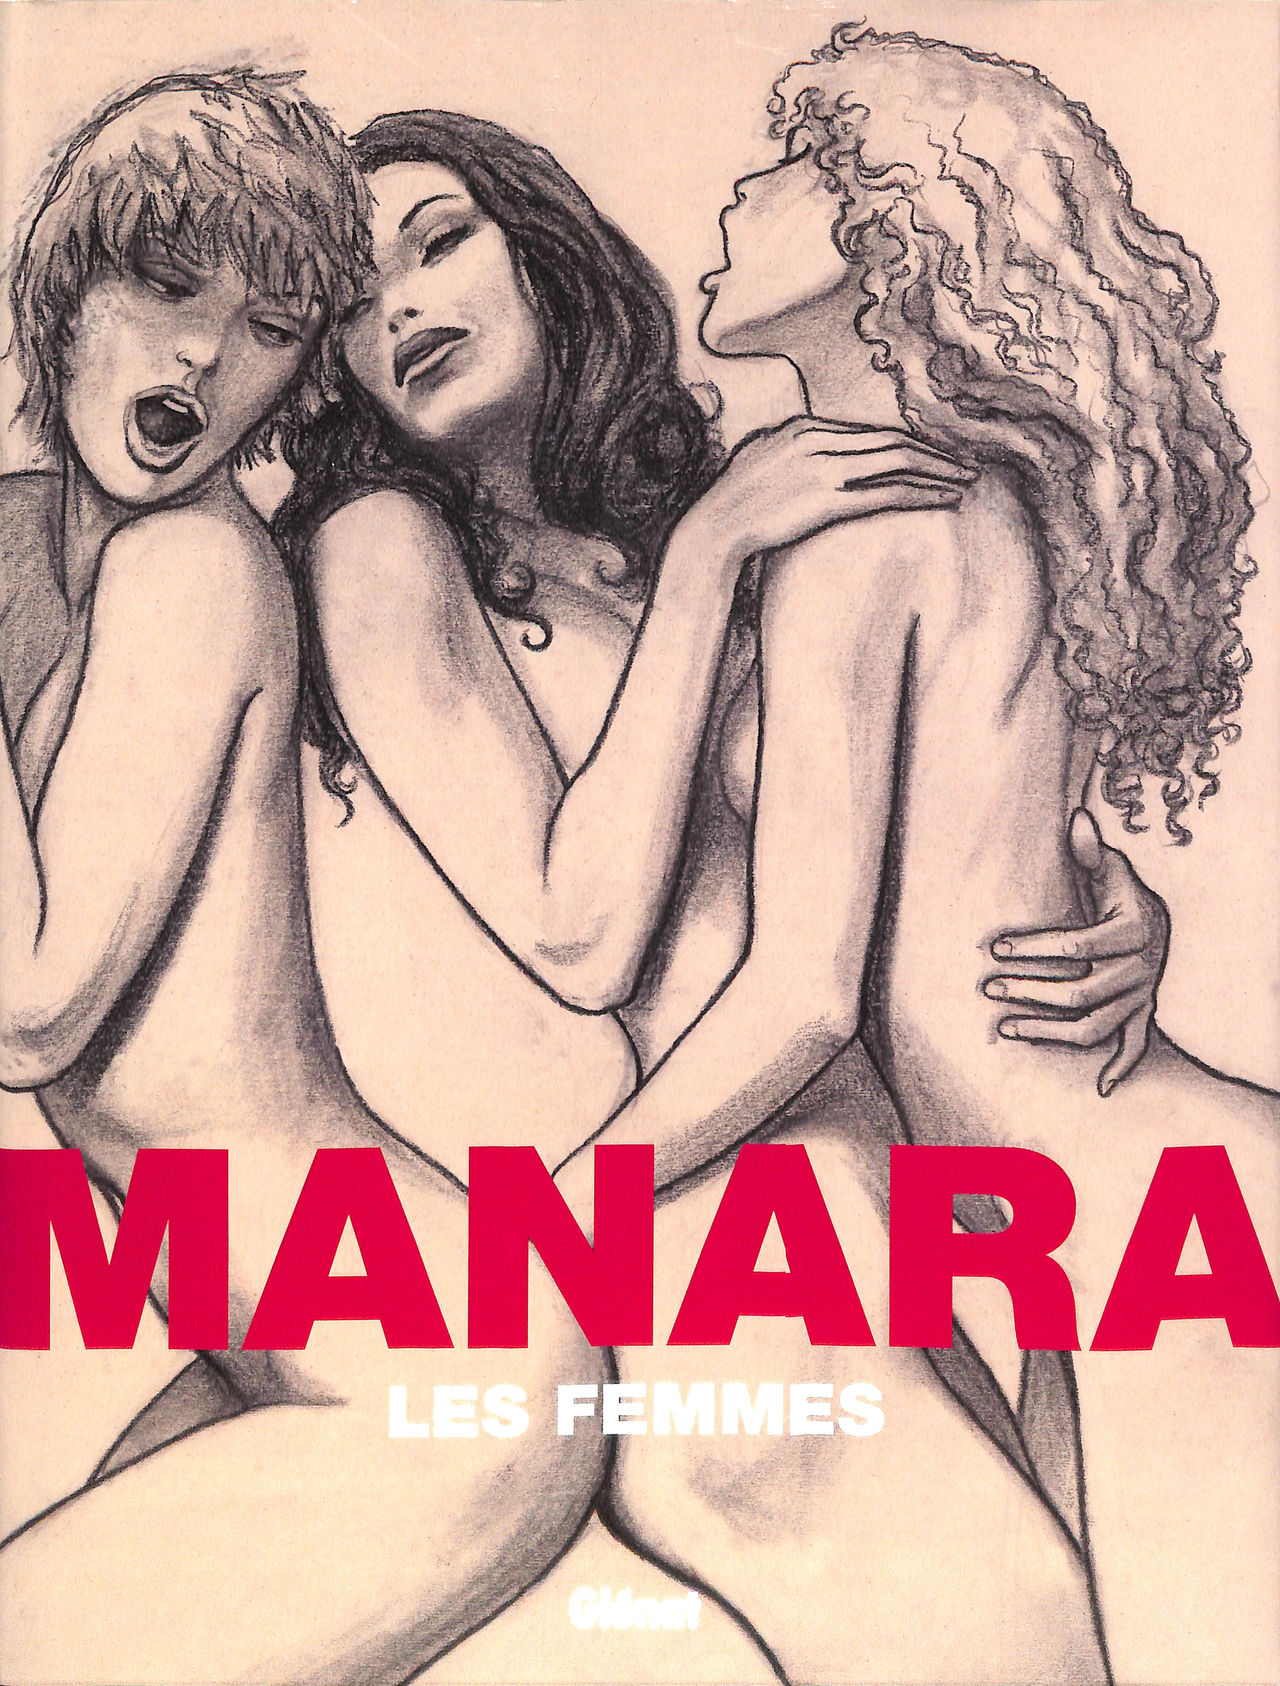 Manara Les Femmes